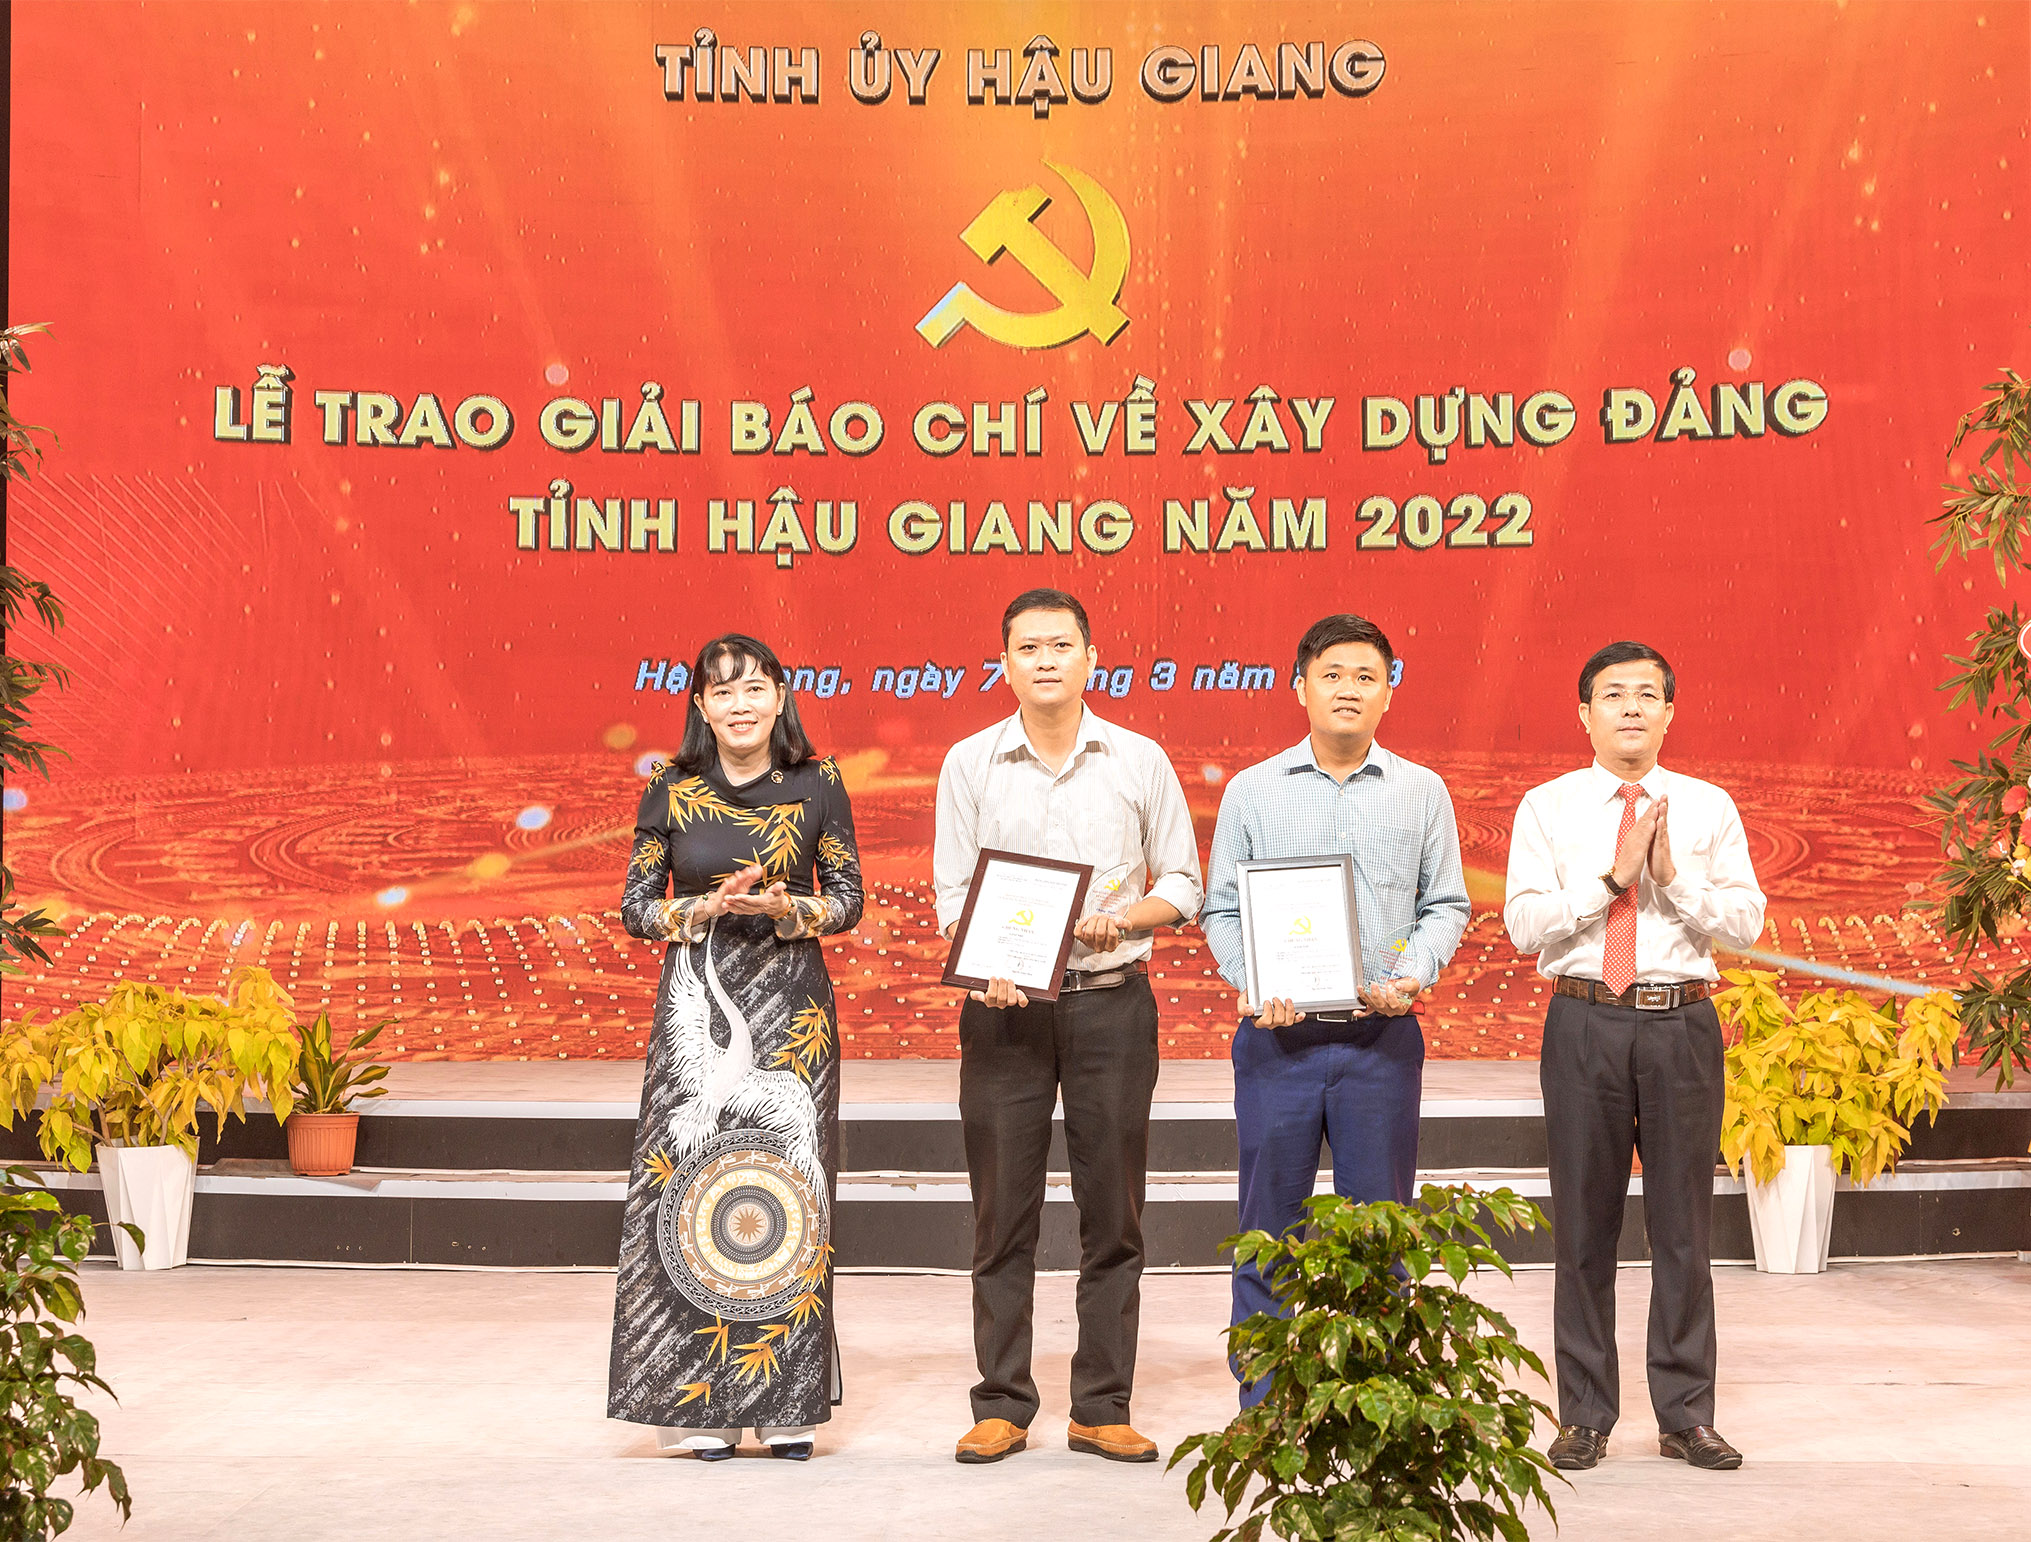 Đồng chí Trần Văn Huyến, Phó Bí thư Thường trực Tỉnh ủy, Chủ tịch HĐND tỉnh và đồng chí Hồ Thu Ánh, Phó Chủ tịch UBND tỉnh trao giải B cho các tác phẩm đạt giải.